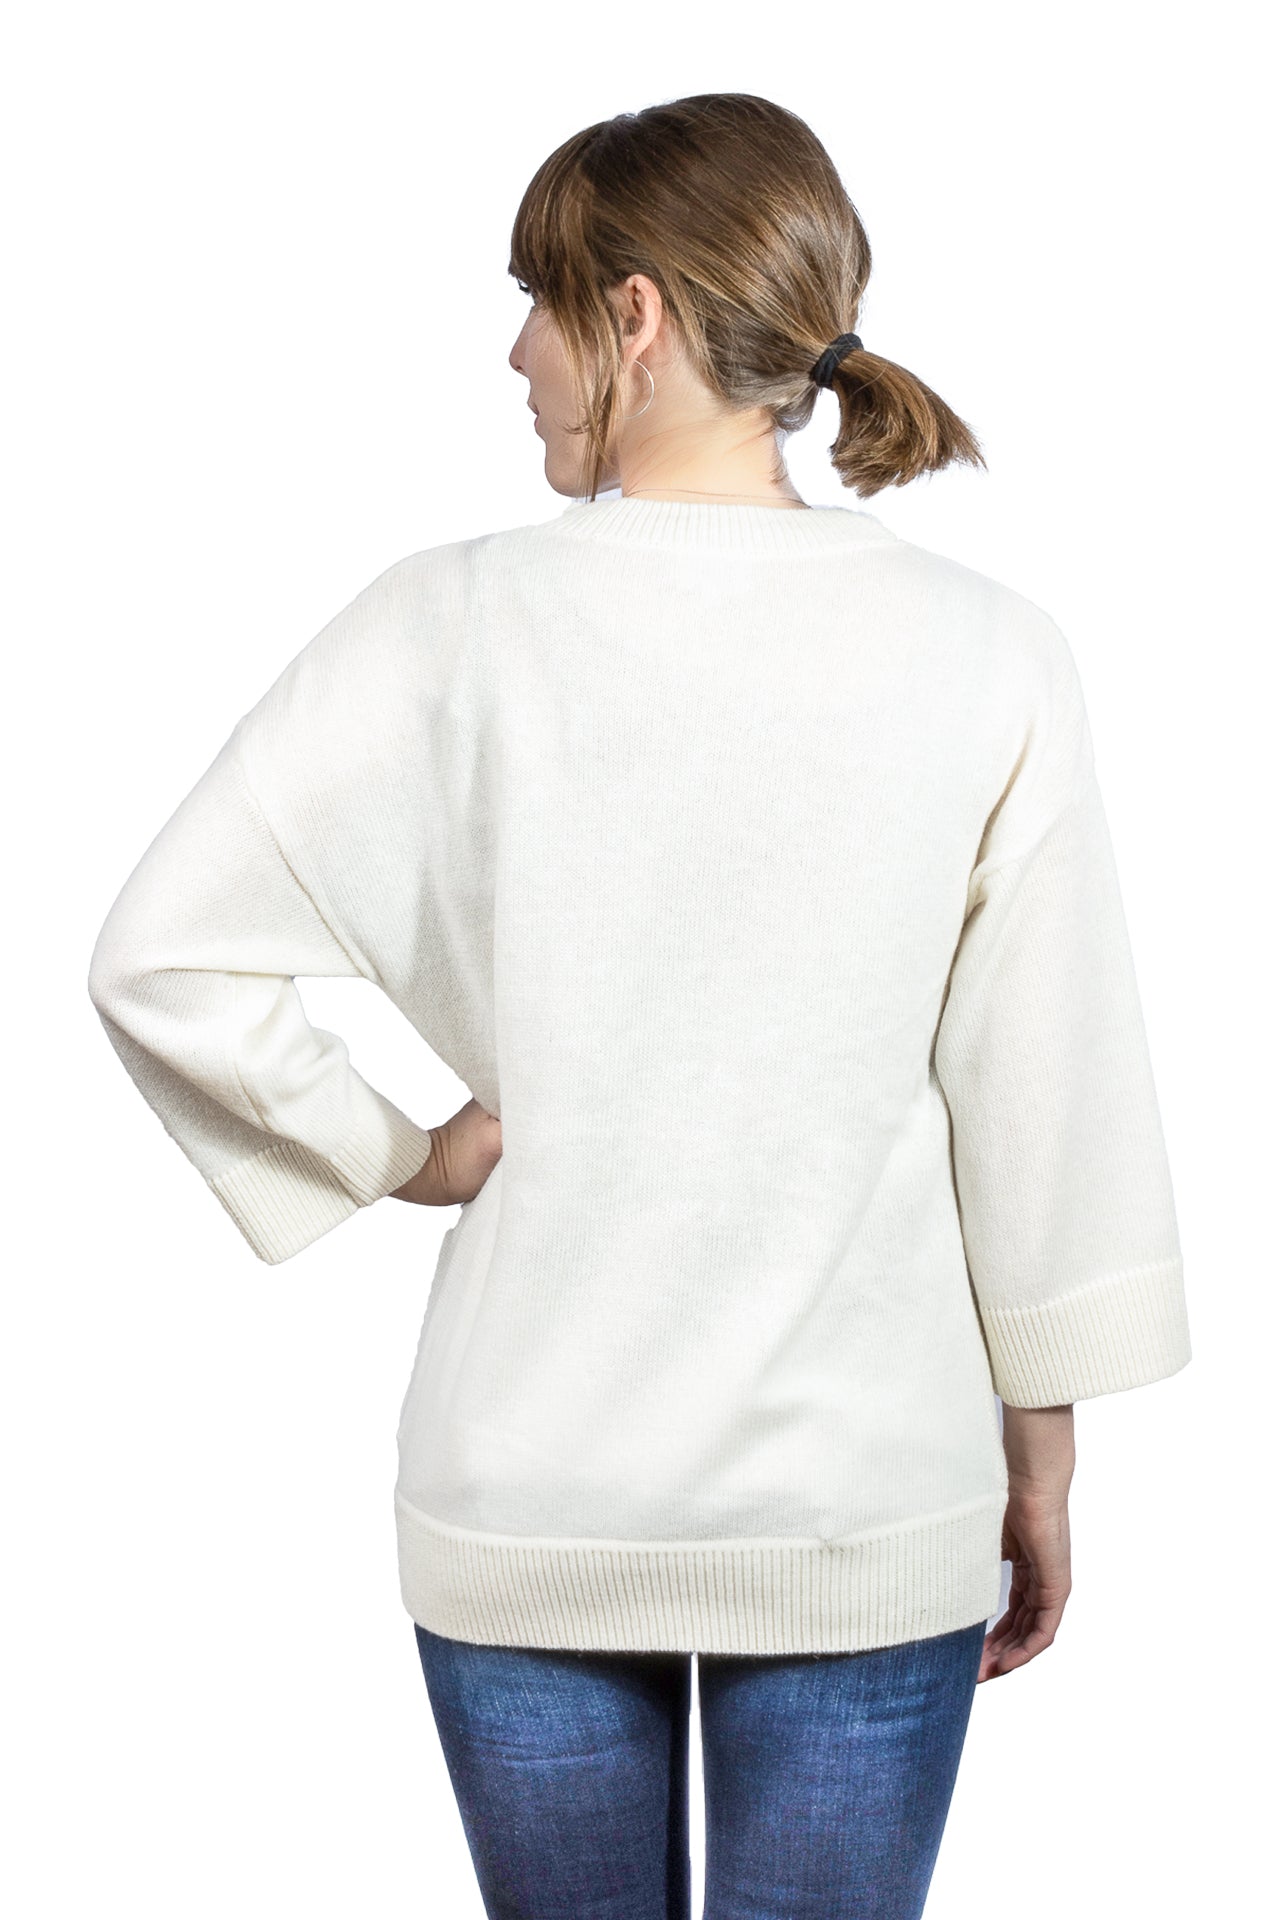 Charli Lanie Sweater